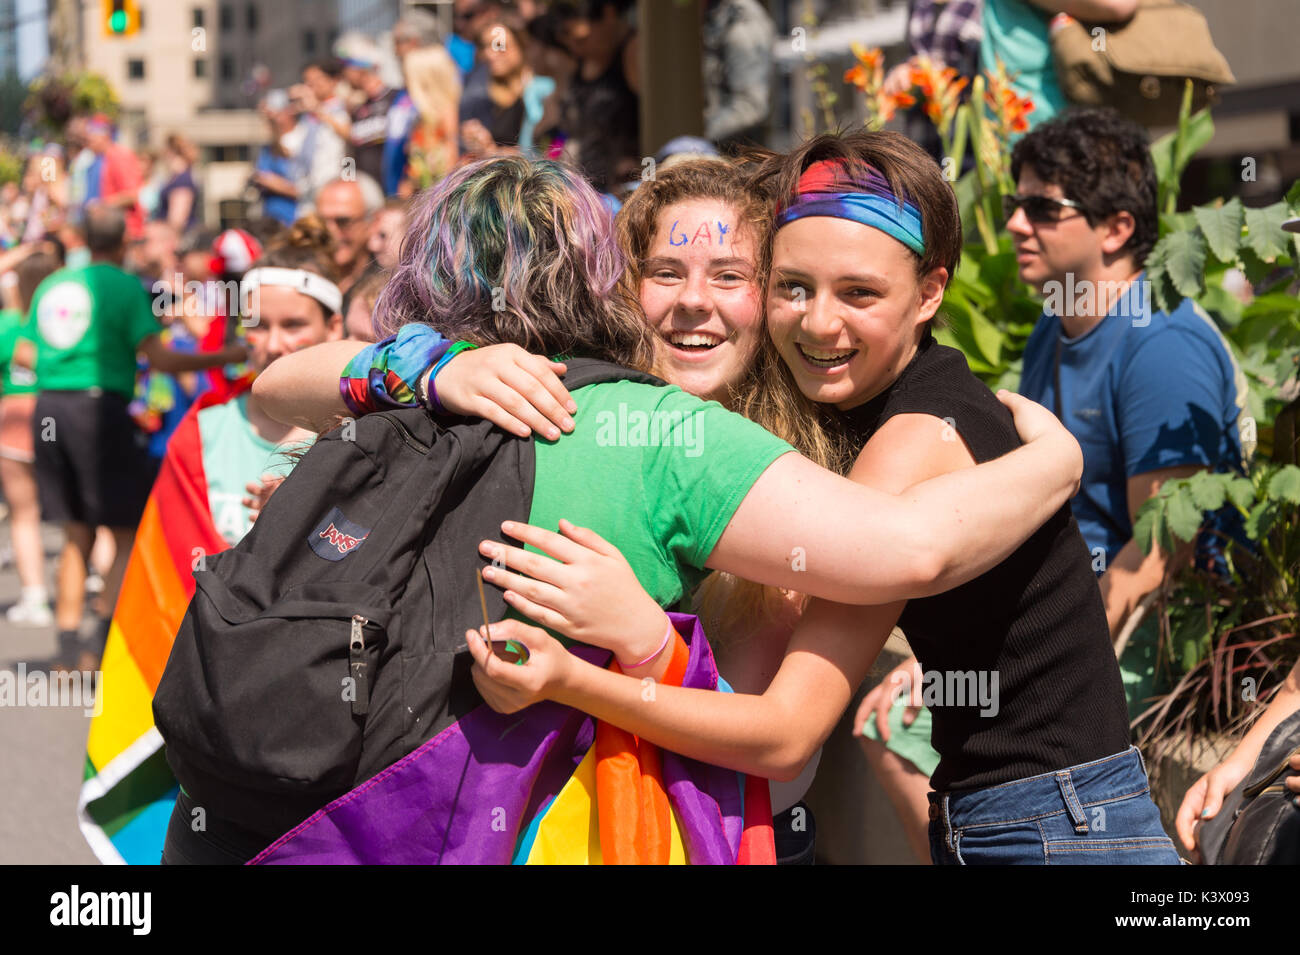 Montreal, Canada - 20 August 2017: 3 persone che abbraccia ogni altro a Montreal Gay Pride Parade Foto Stock